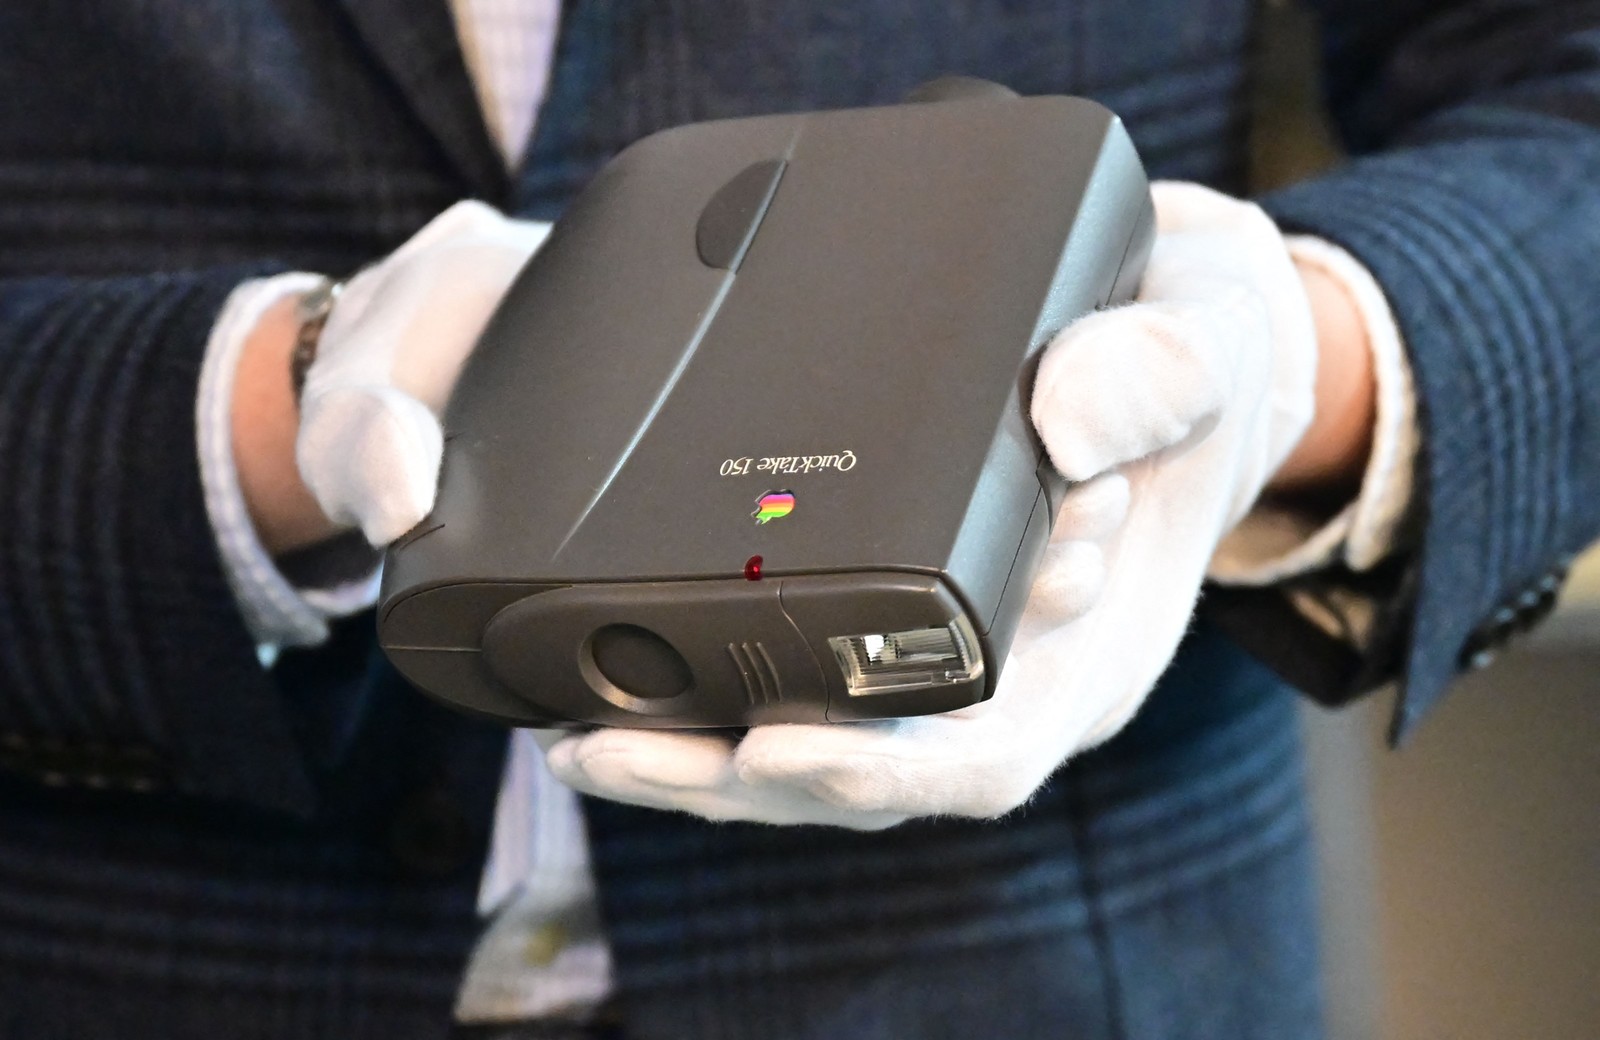 Foto mostra um Apple QuickTake, um dos primeiros modelos comerciais de câmeras digitais — Foto: Frederic J. BROWN / AFP